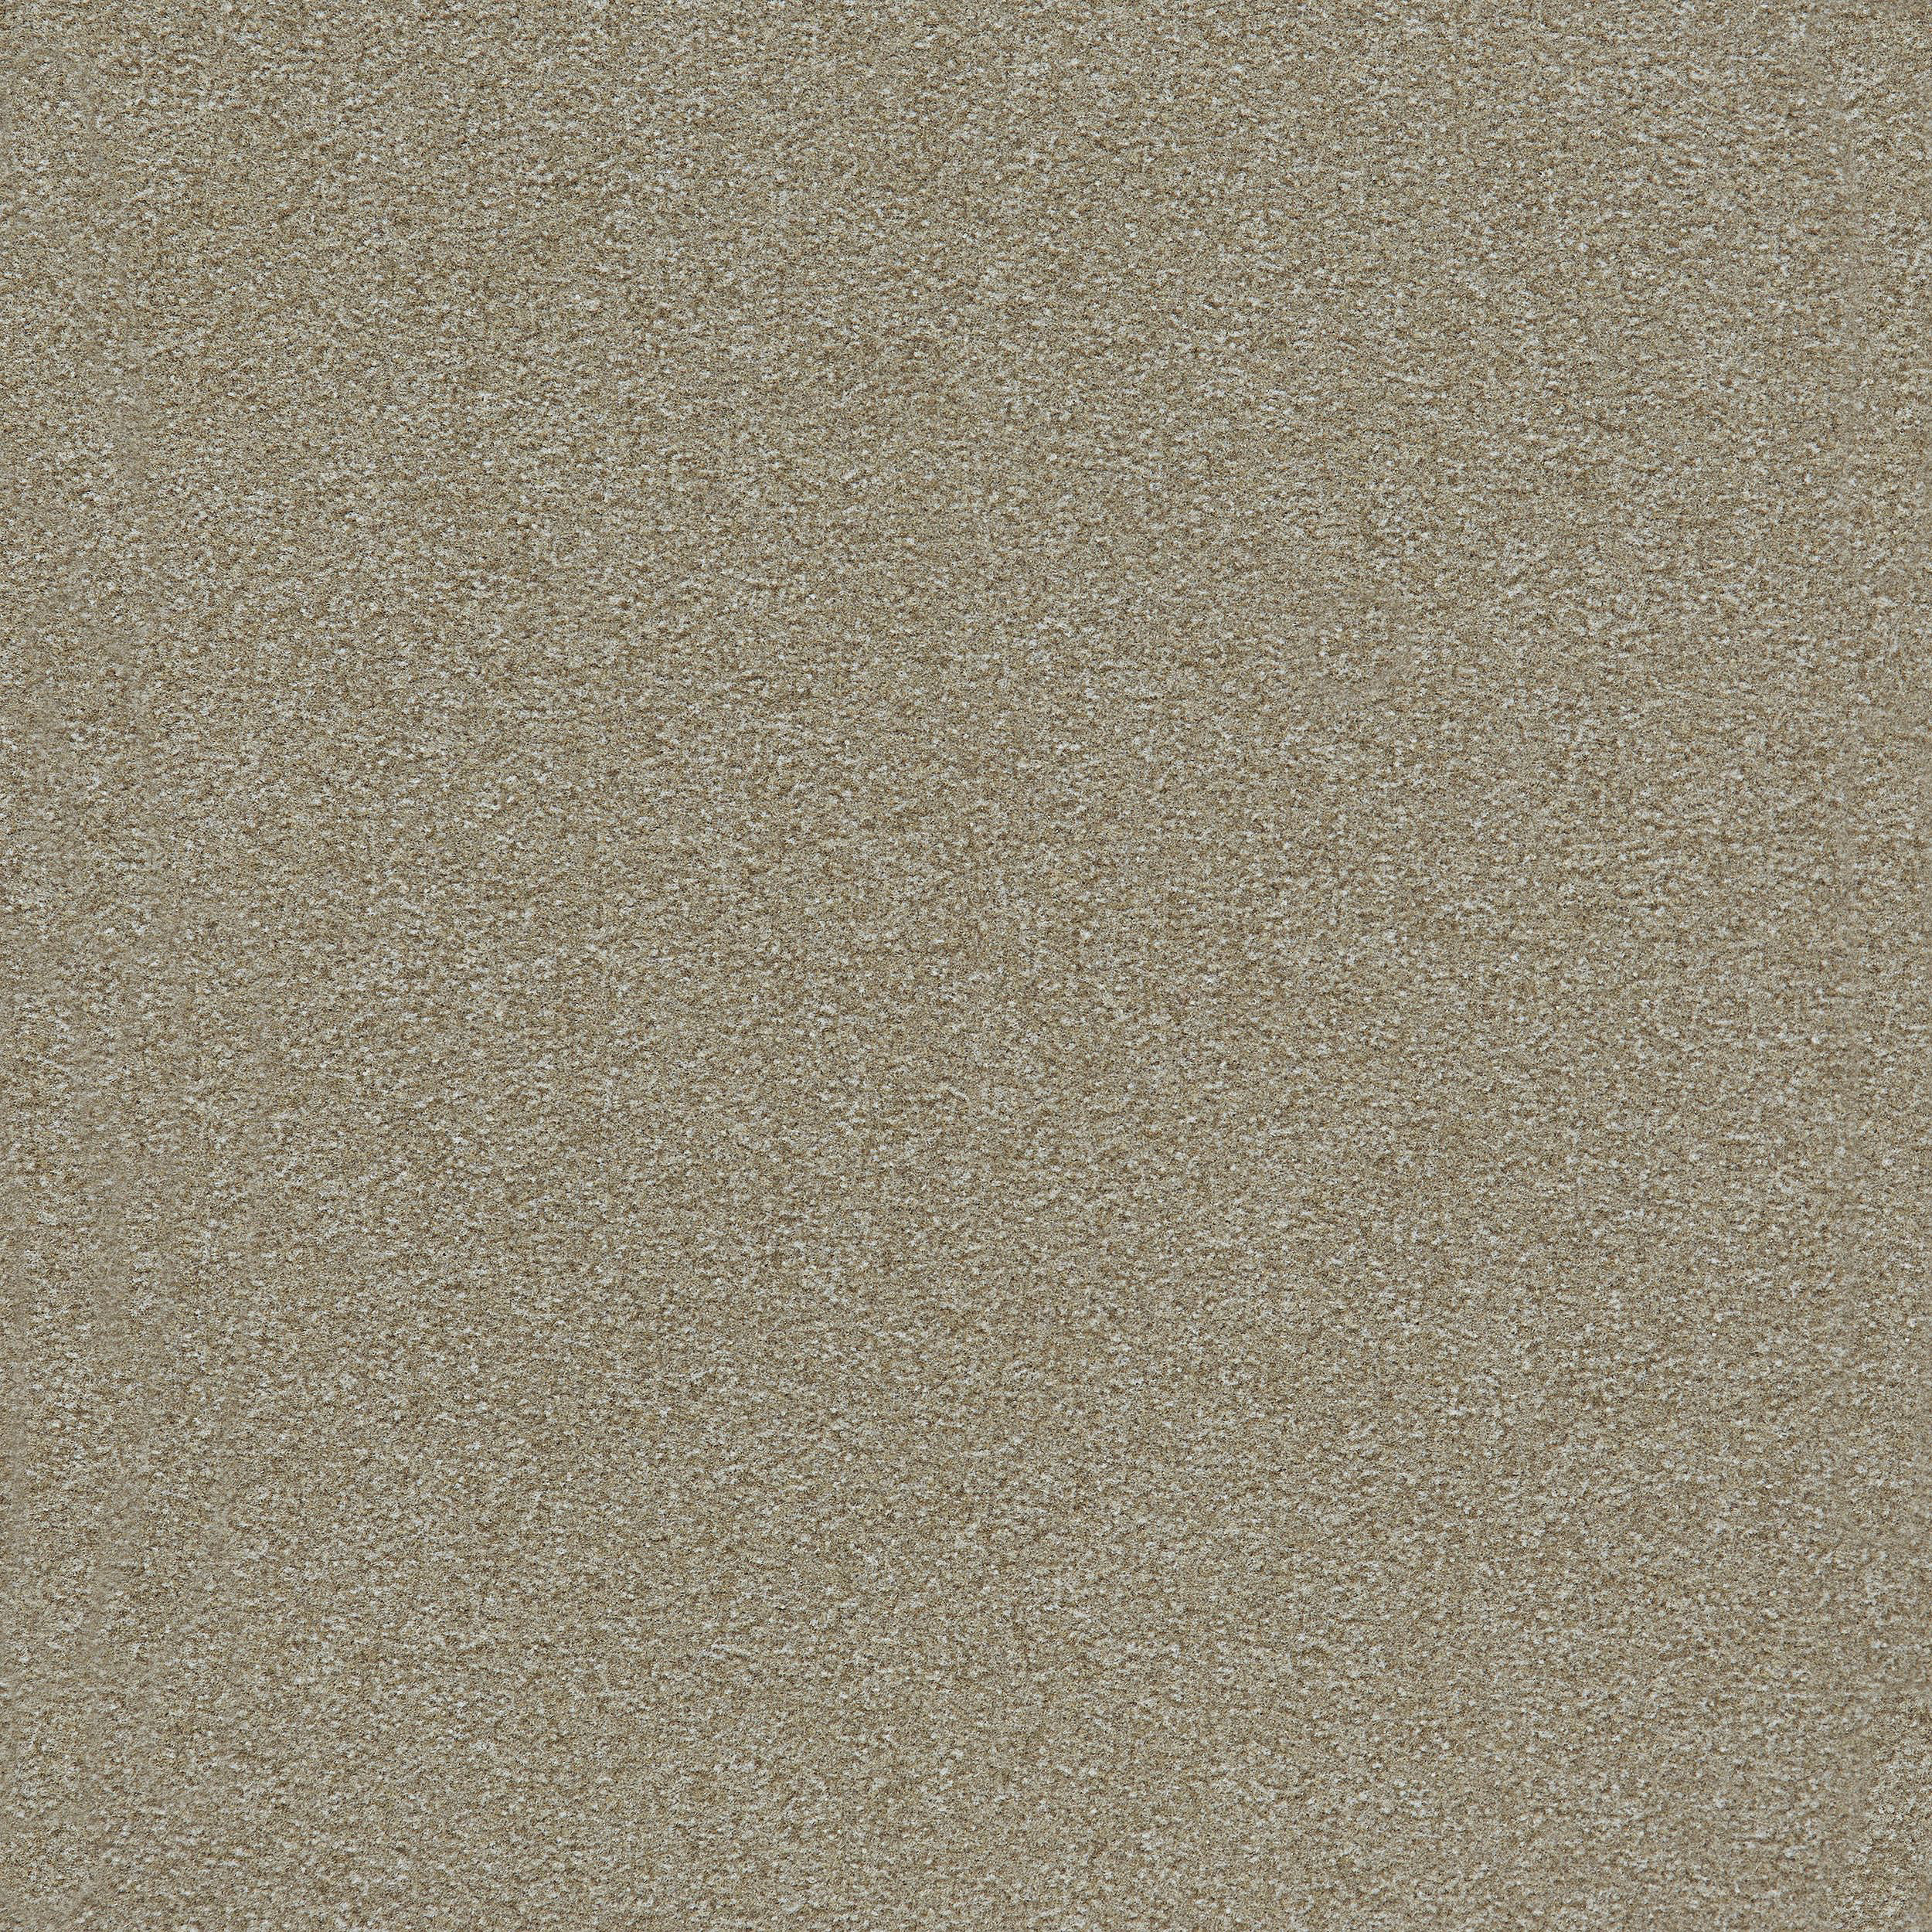 Heuga 725 Carpet Tile In Oyster número de imagen 11